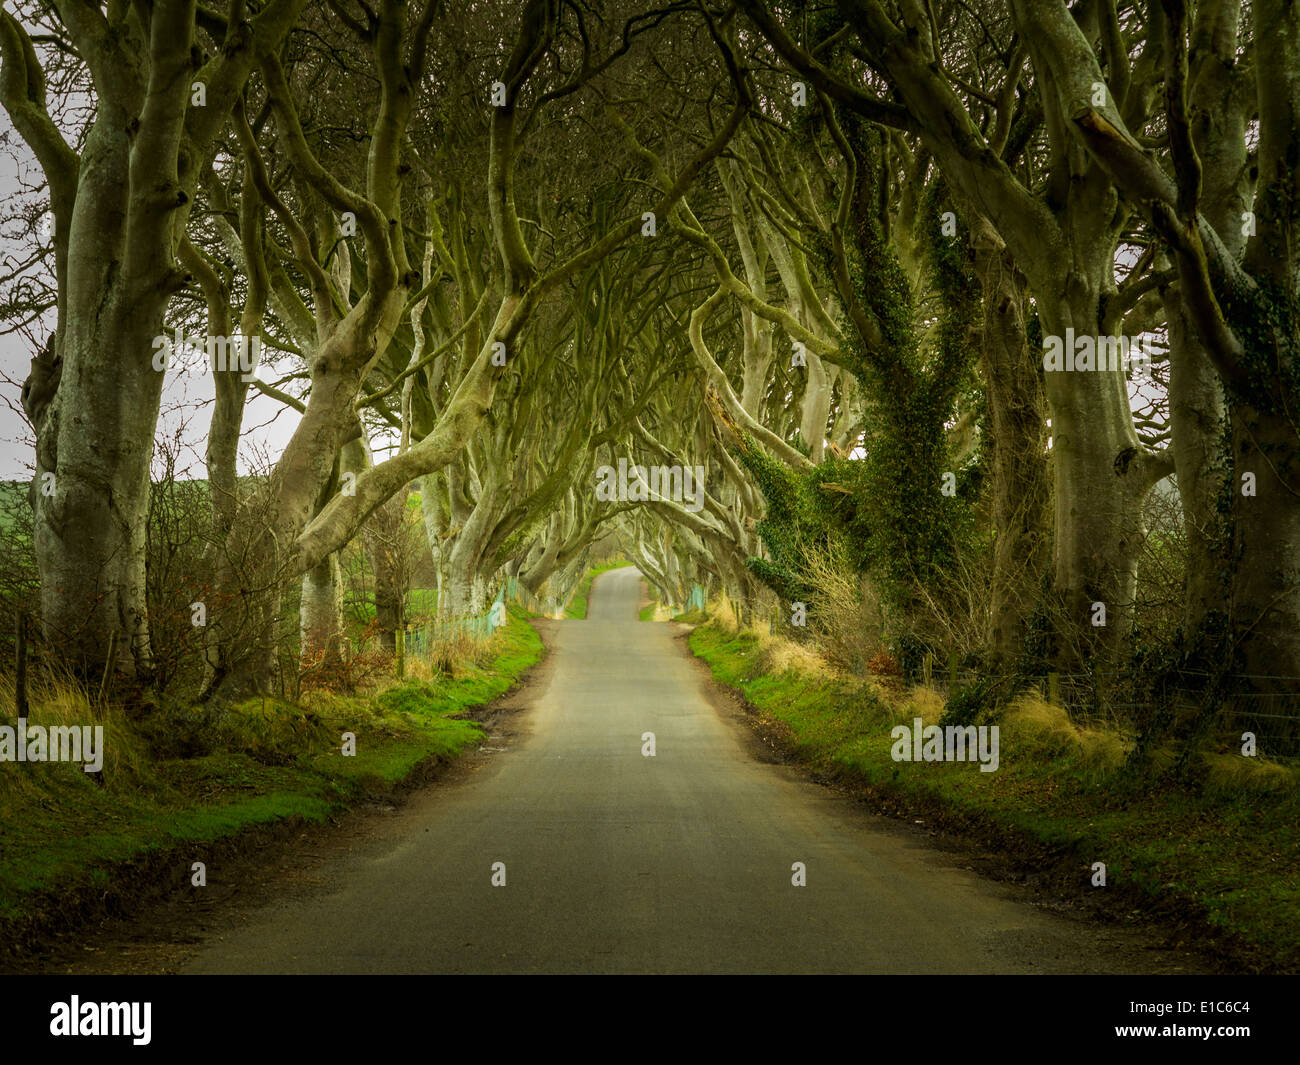 Irland - dunkle Hecken - einer berühmten magischen Bäumen gesäumten Straße nahe Ballymoney, County Antrim, Nordirland, Vereinigtes Königreich Stockfoto